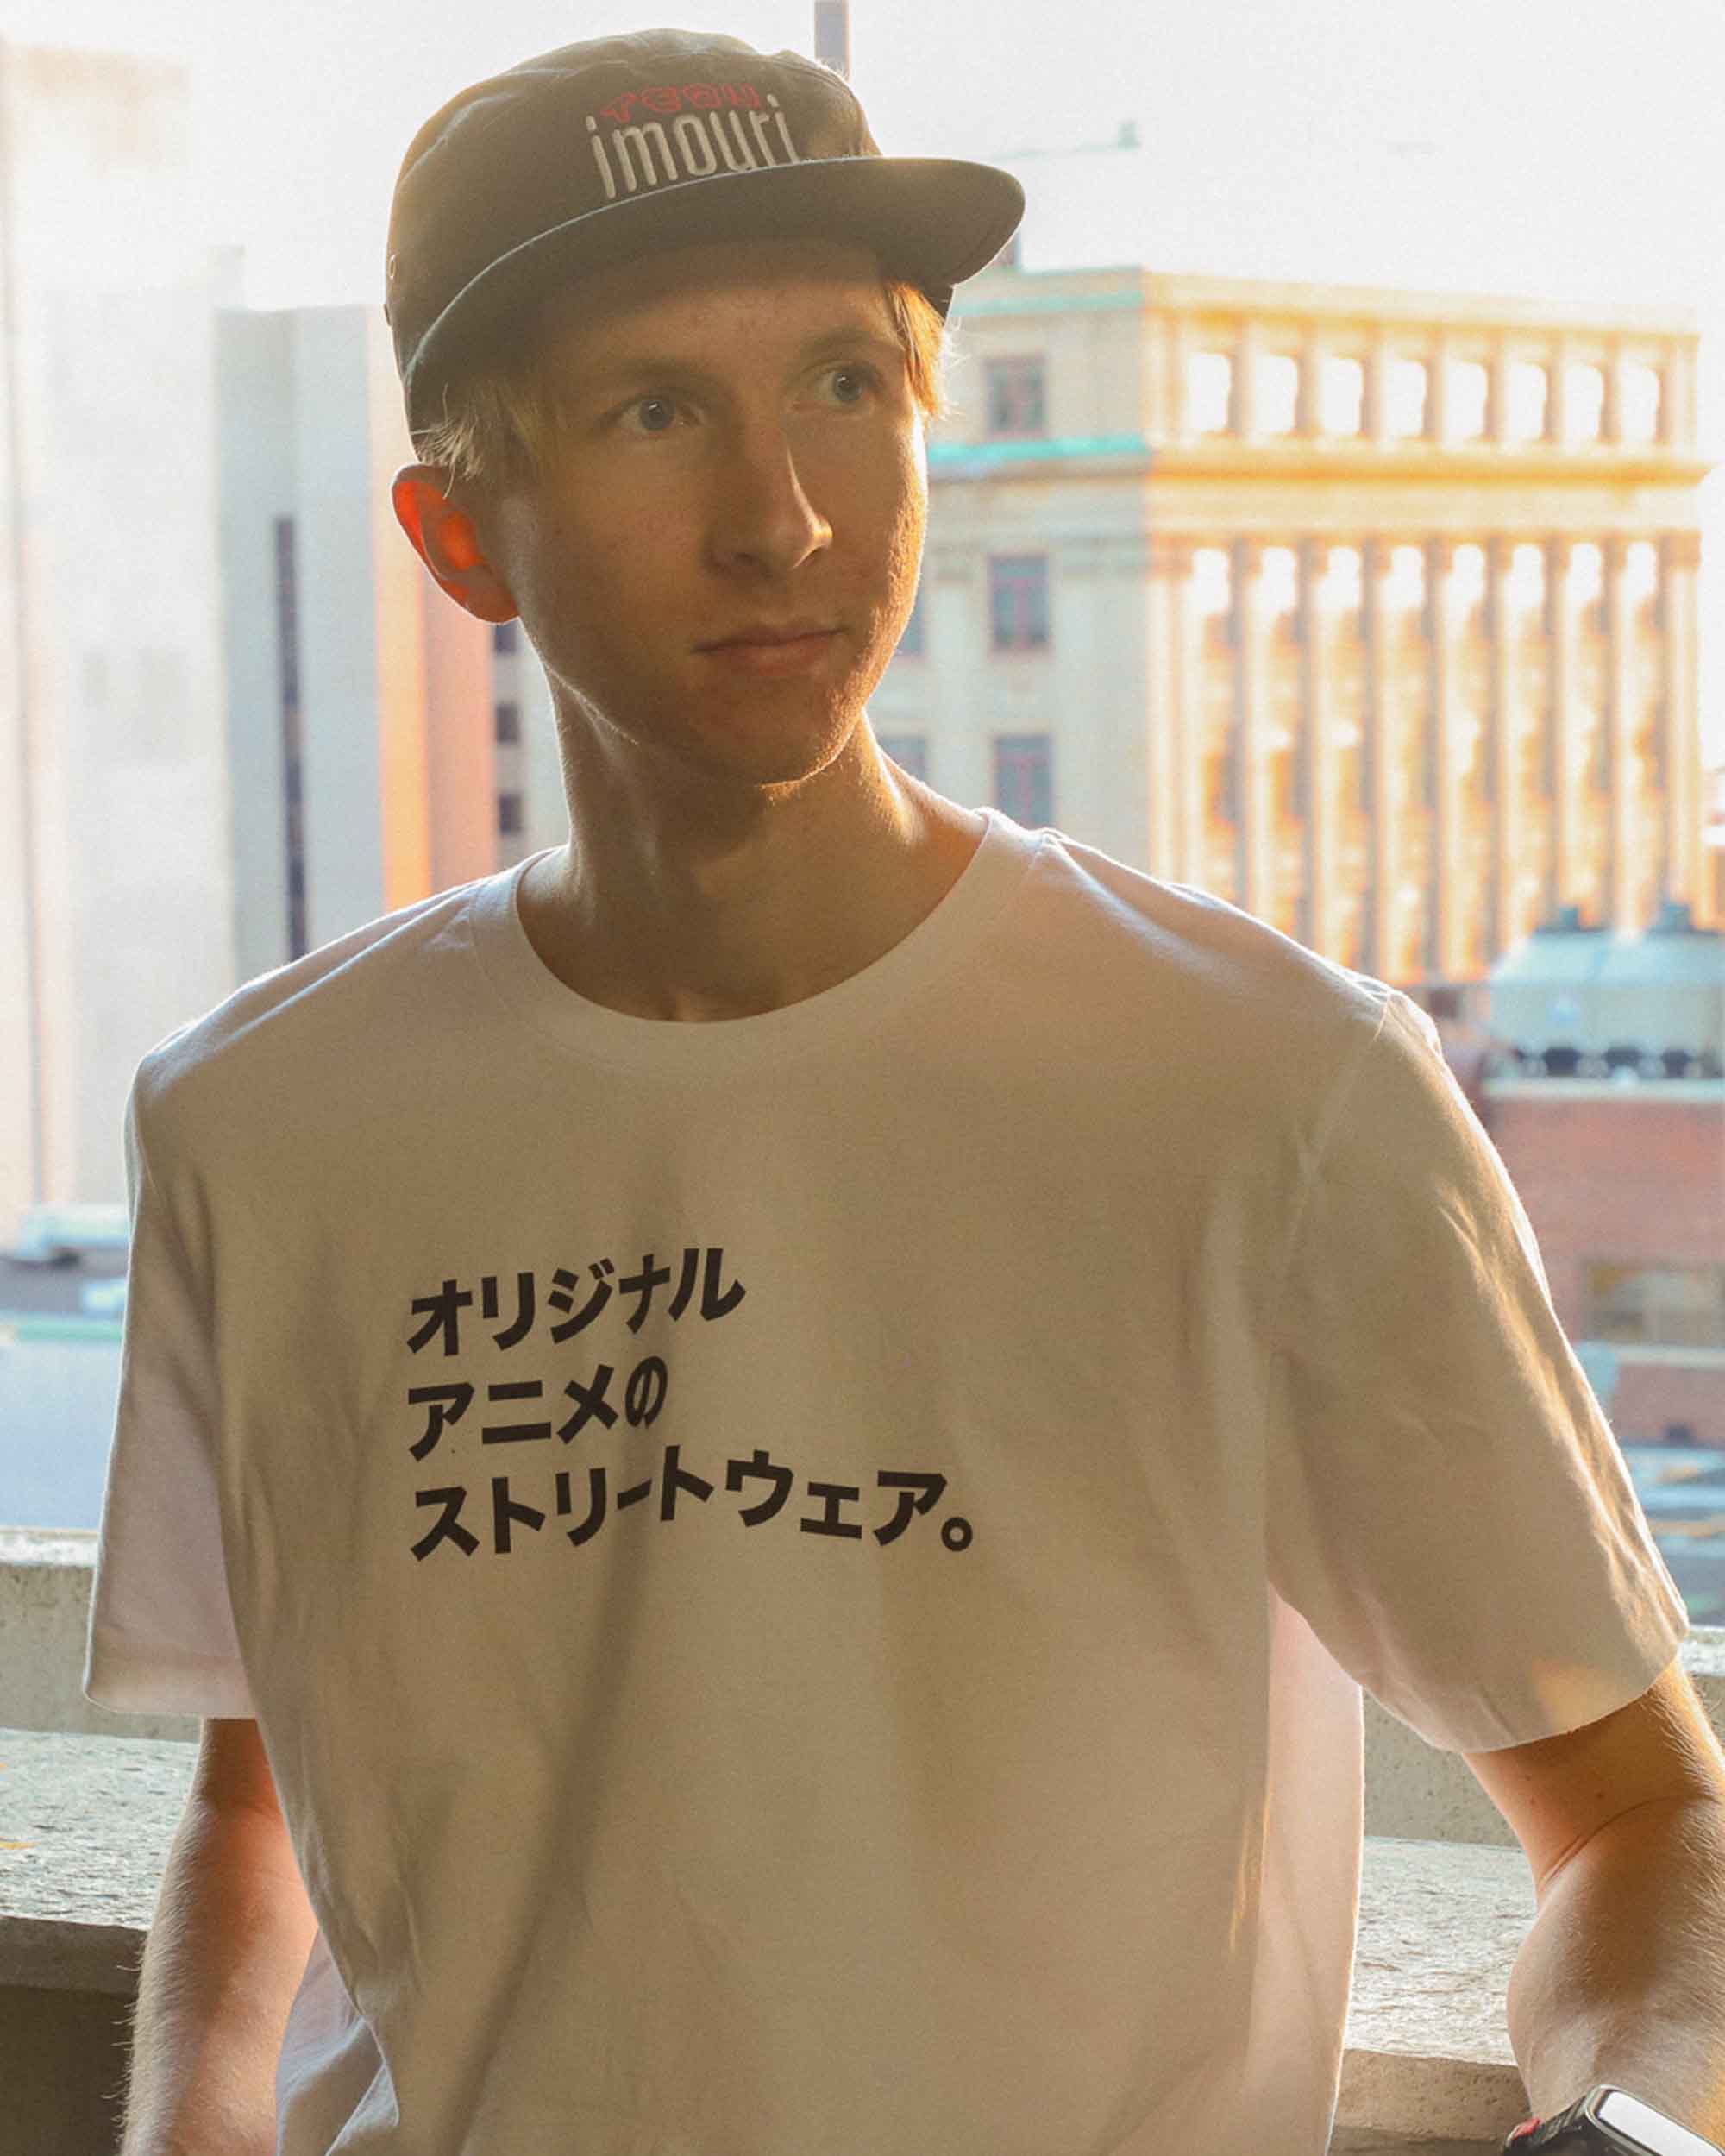 Imouri 2 Year Rebrandiversary Anime T Shirt